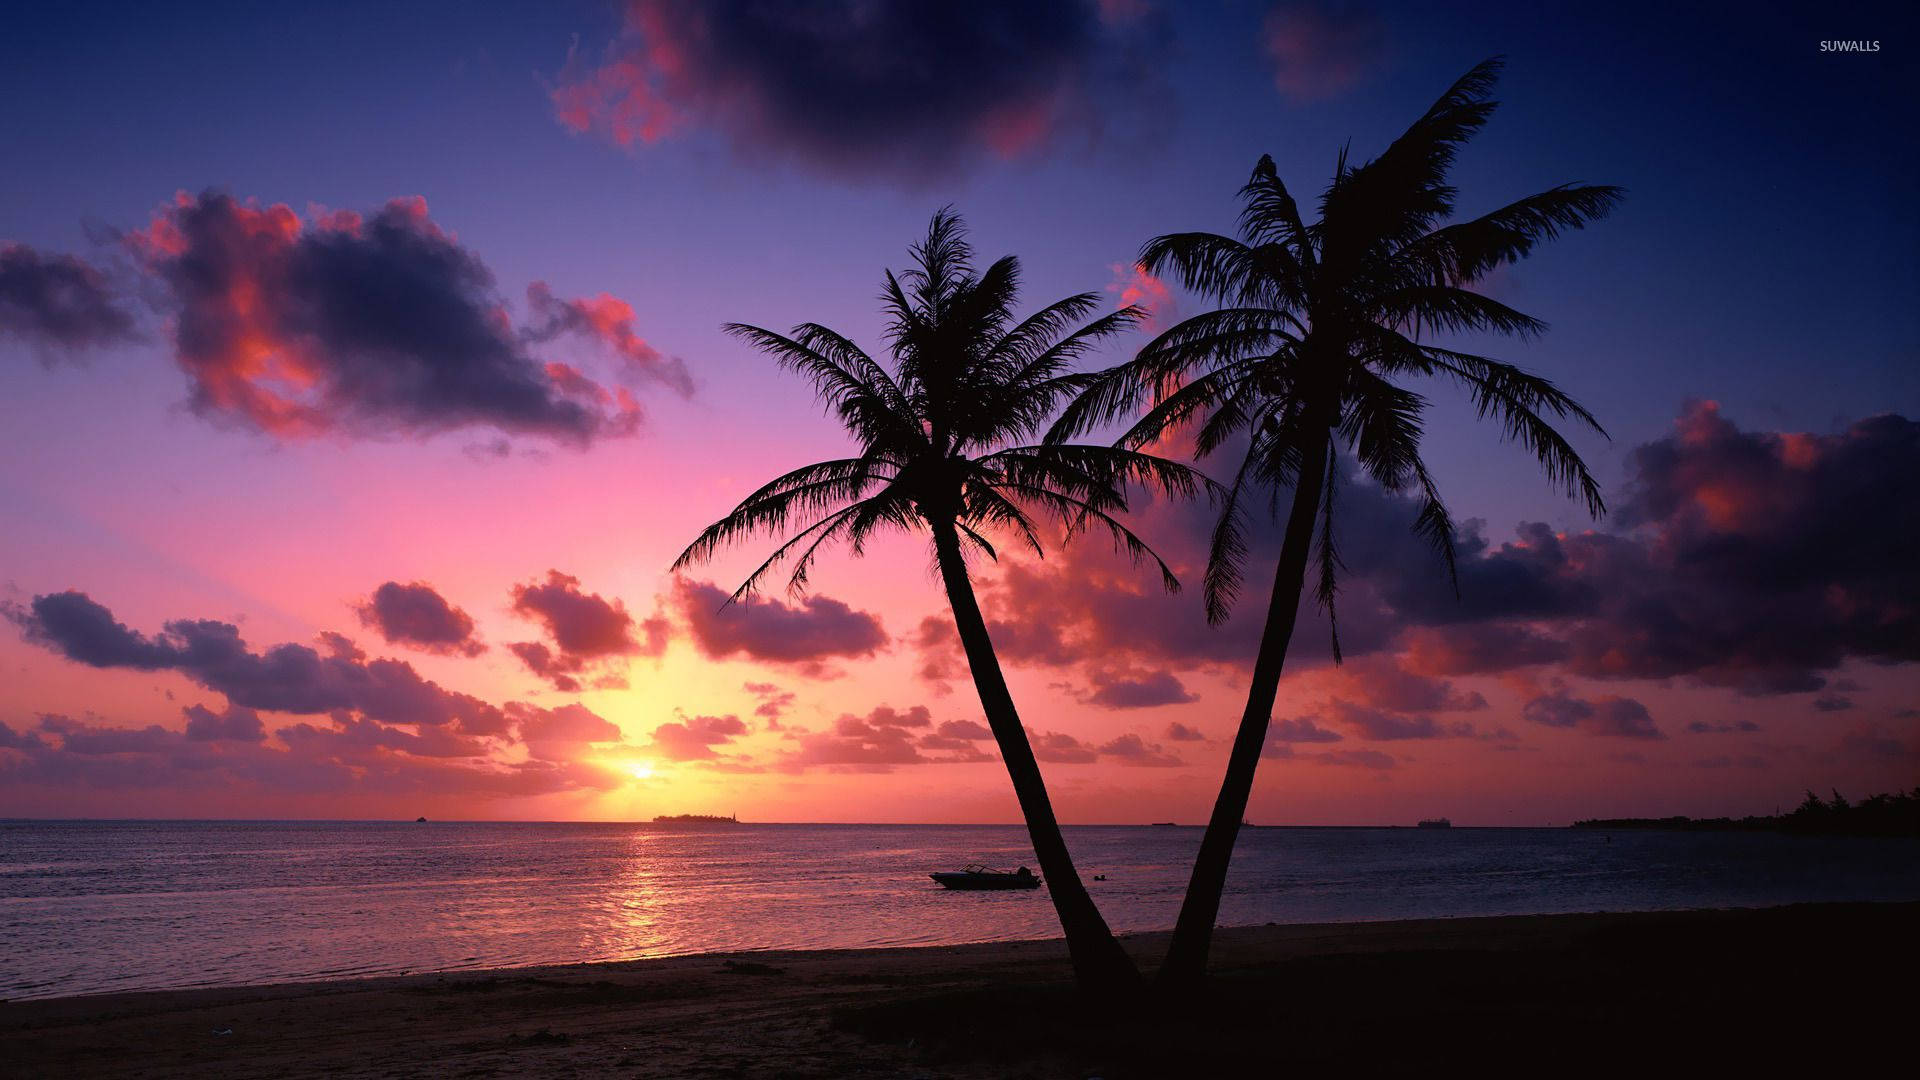 A picturesque sunset at an ocean beach. Wallpaper